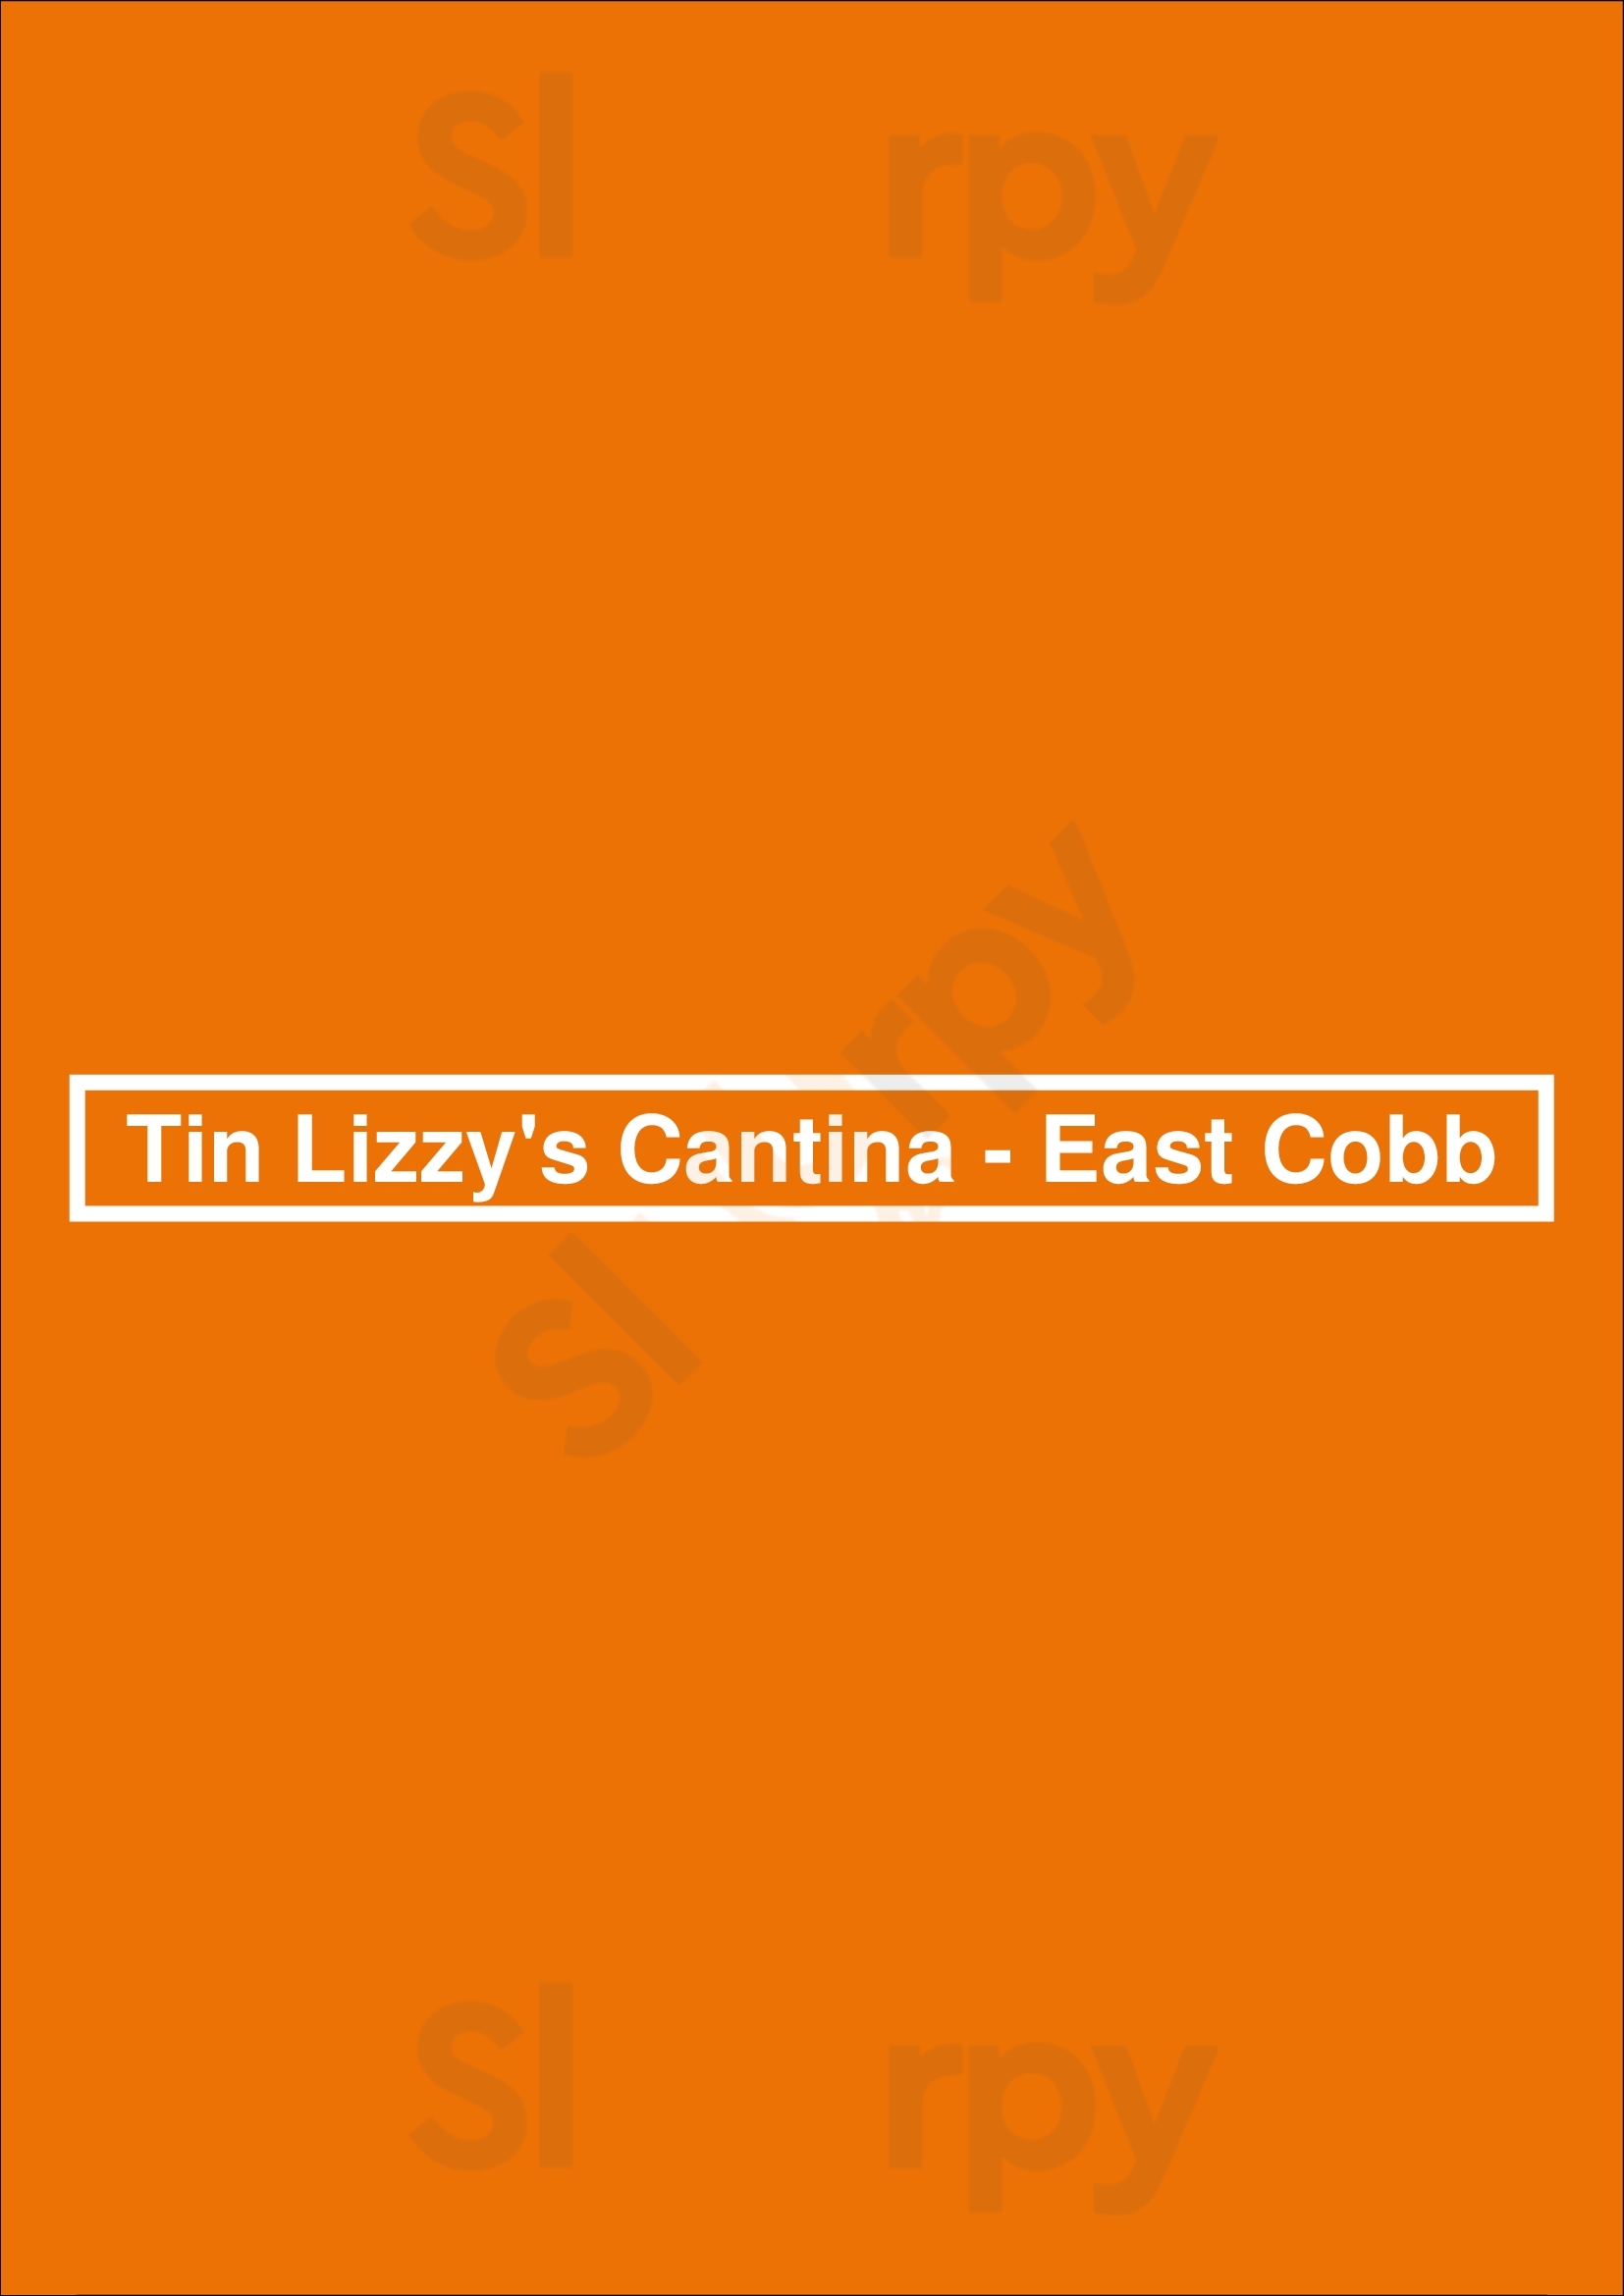 Tin Lizzy's Cantina Marietta Menu - 1